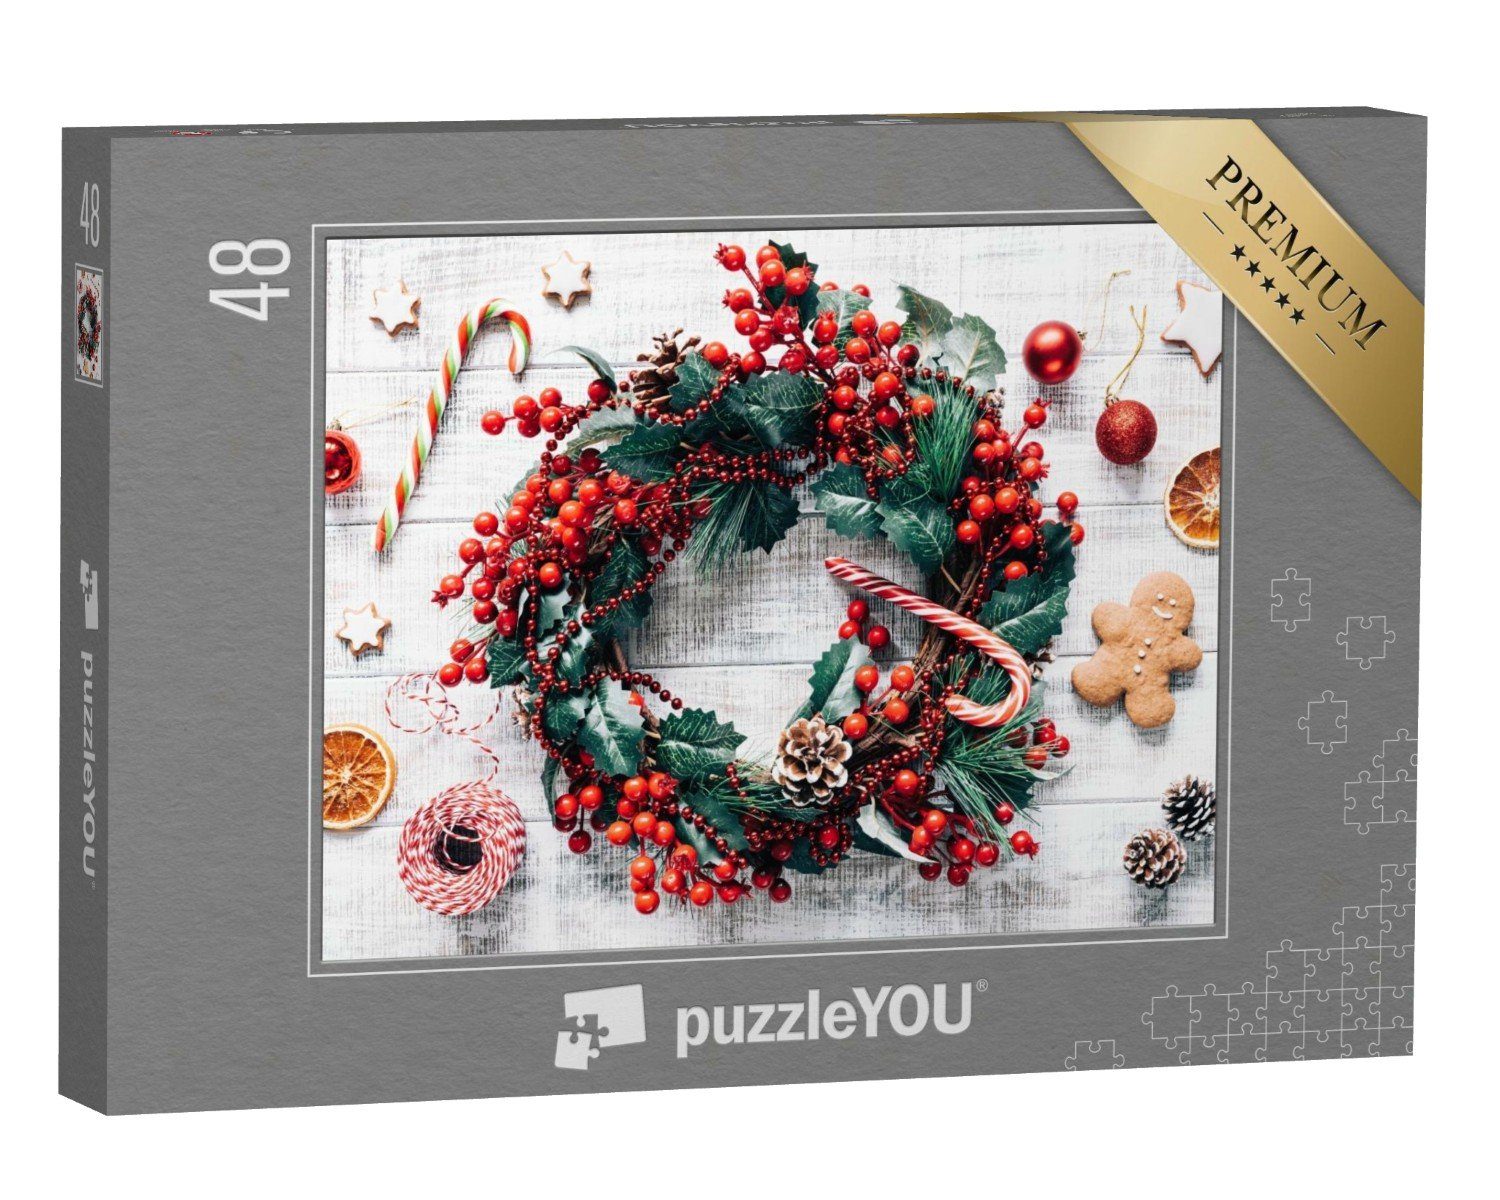 neu puzzleYOU Puzzle Weihnachten: Weihnachtsbaumschmuck Puzzleteile, Lebkuchen, puzzleYOU-Kollektionen Weihnachten und 48